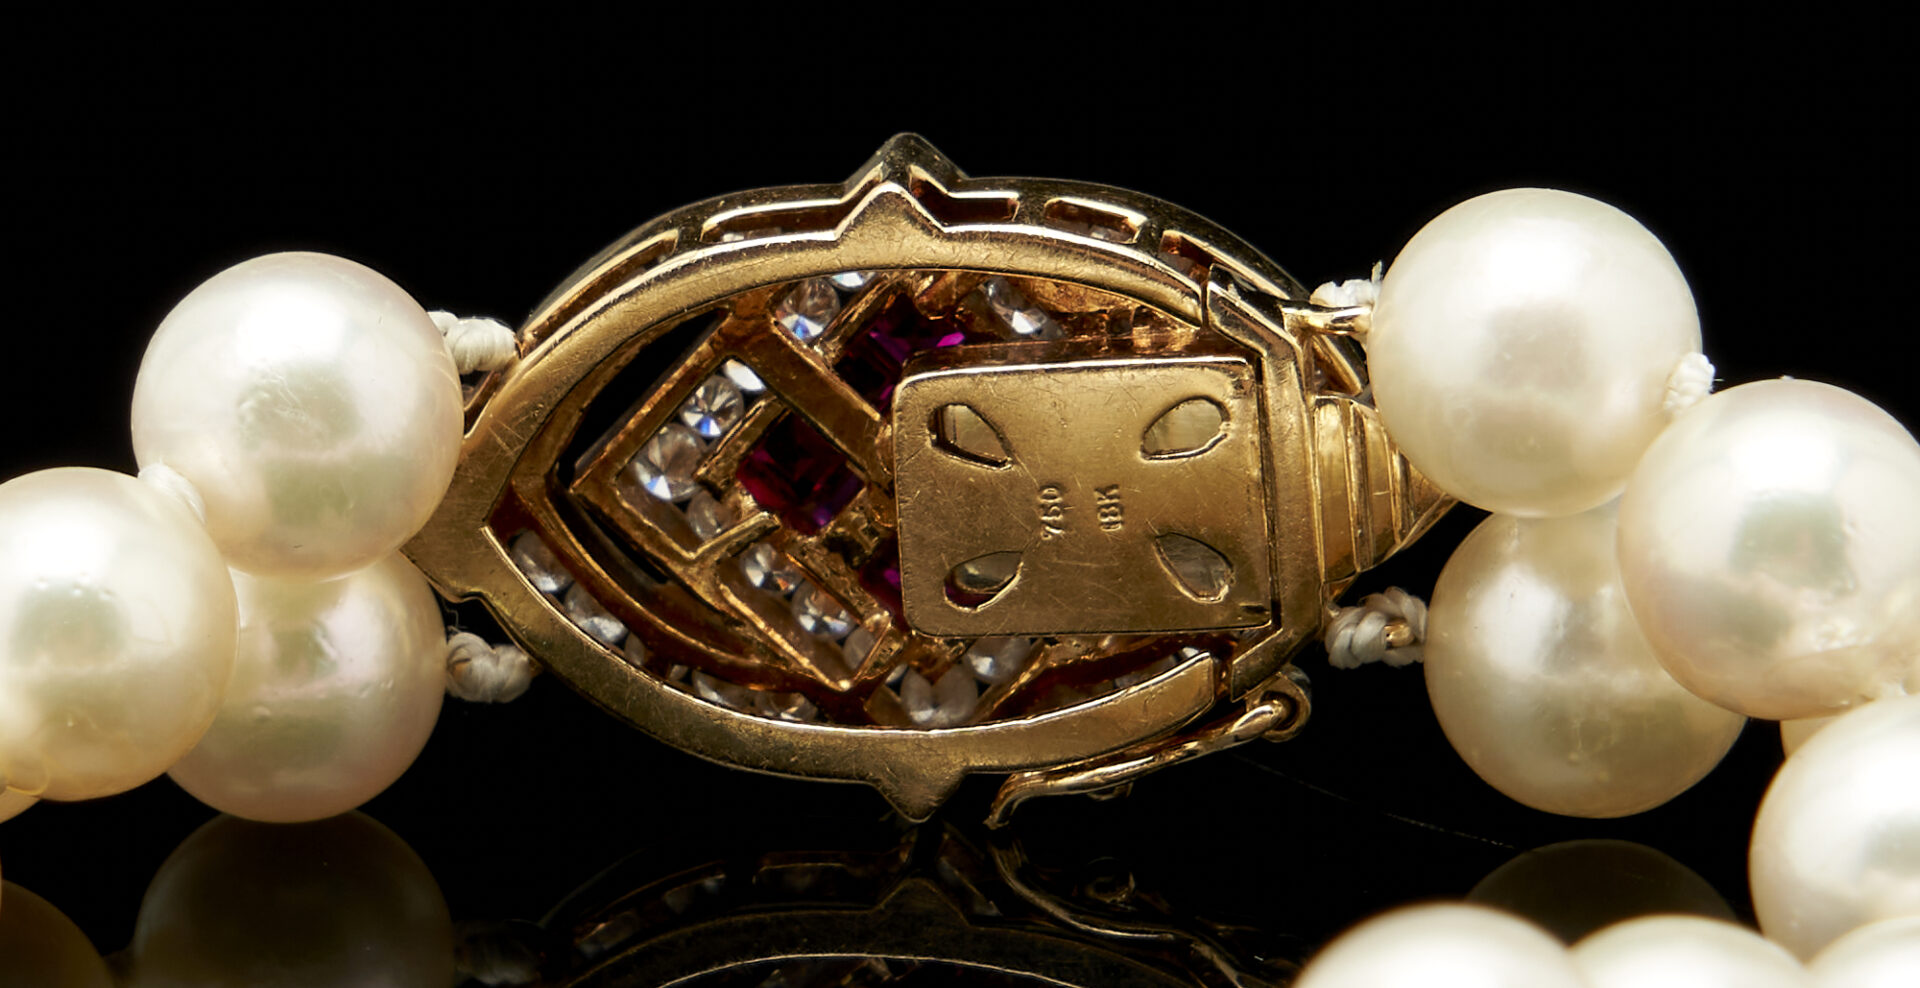 Lot 908: 2 14K Gold & Pearl Bracelets & Pearl Earrings